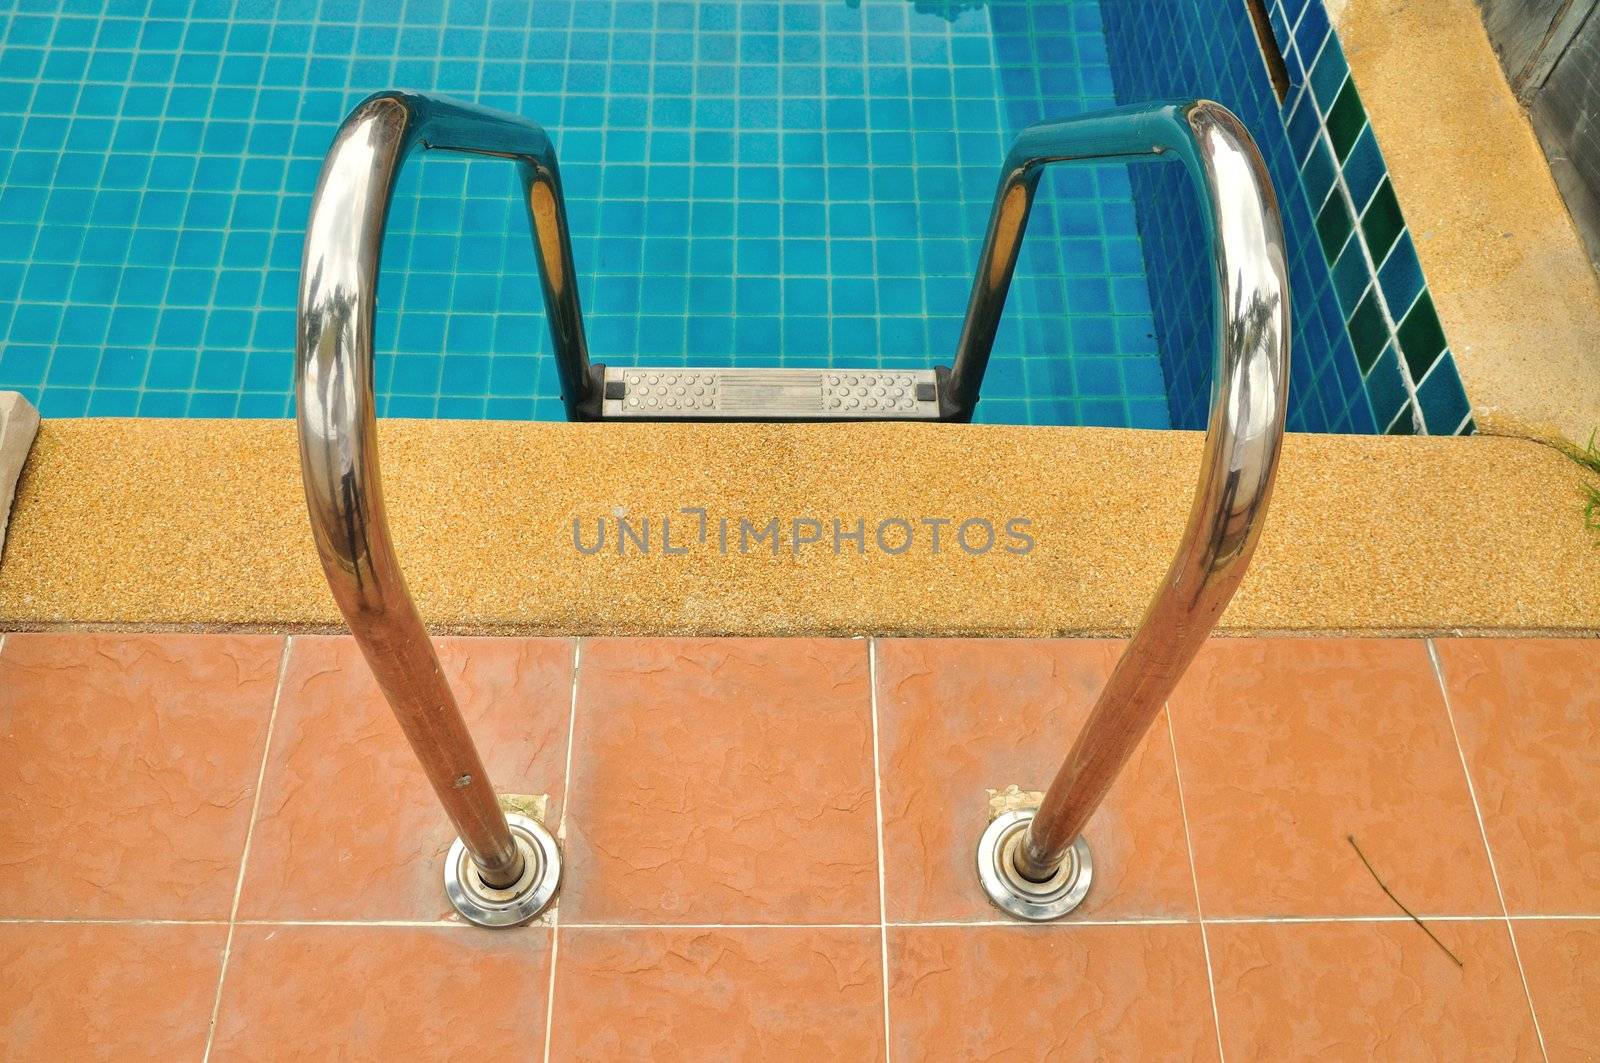 Swimming pool ladder in Bangkok, Thailand